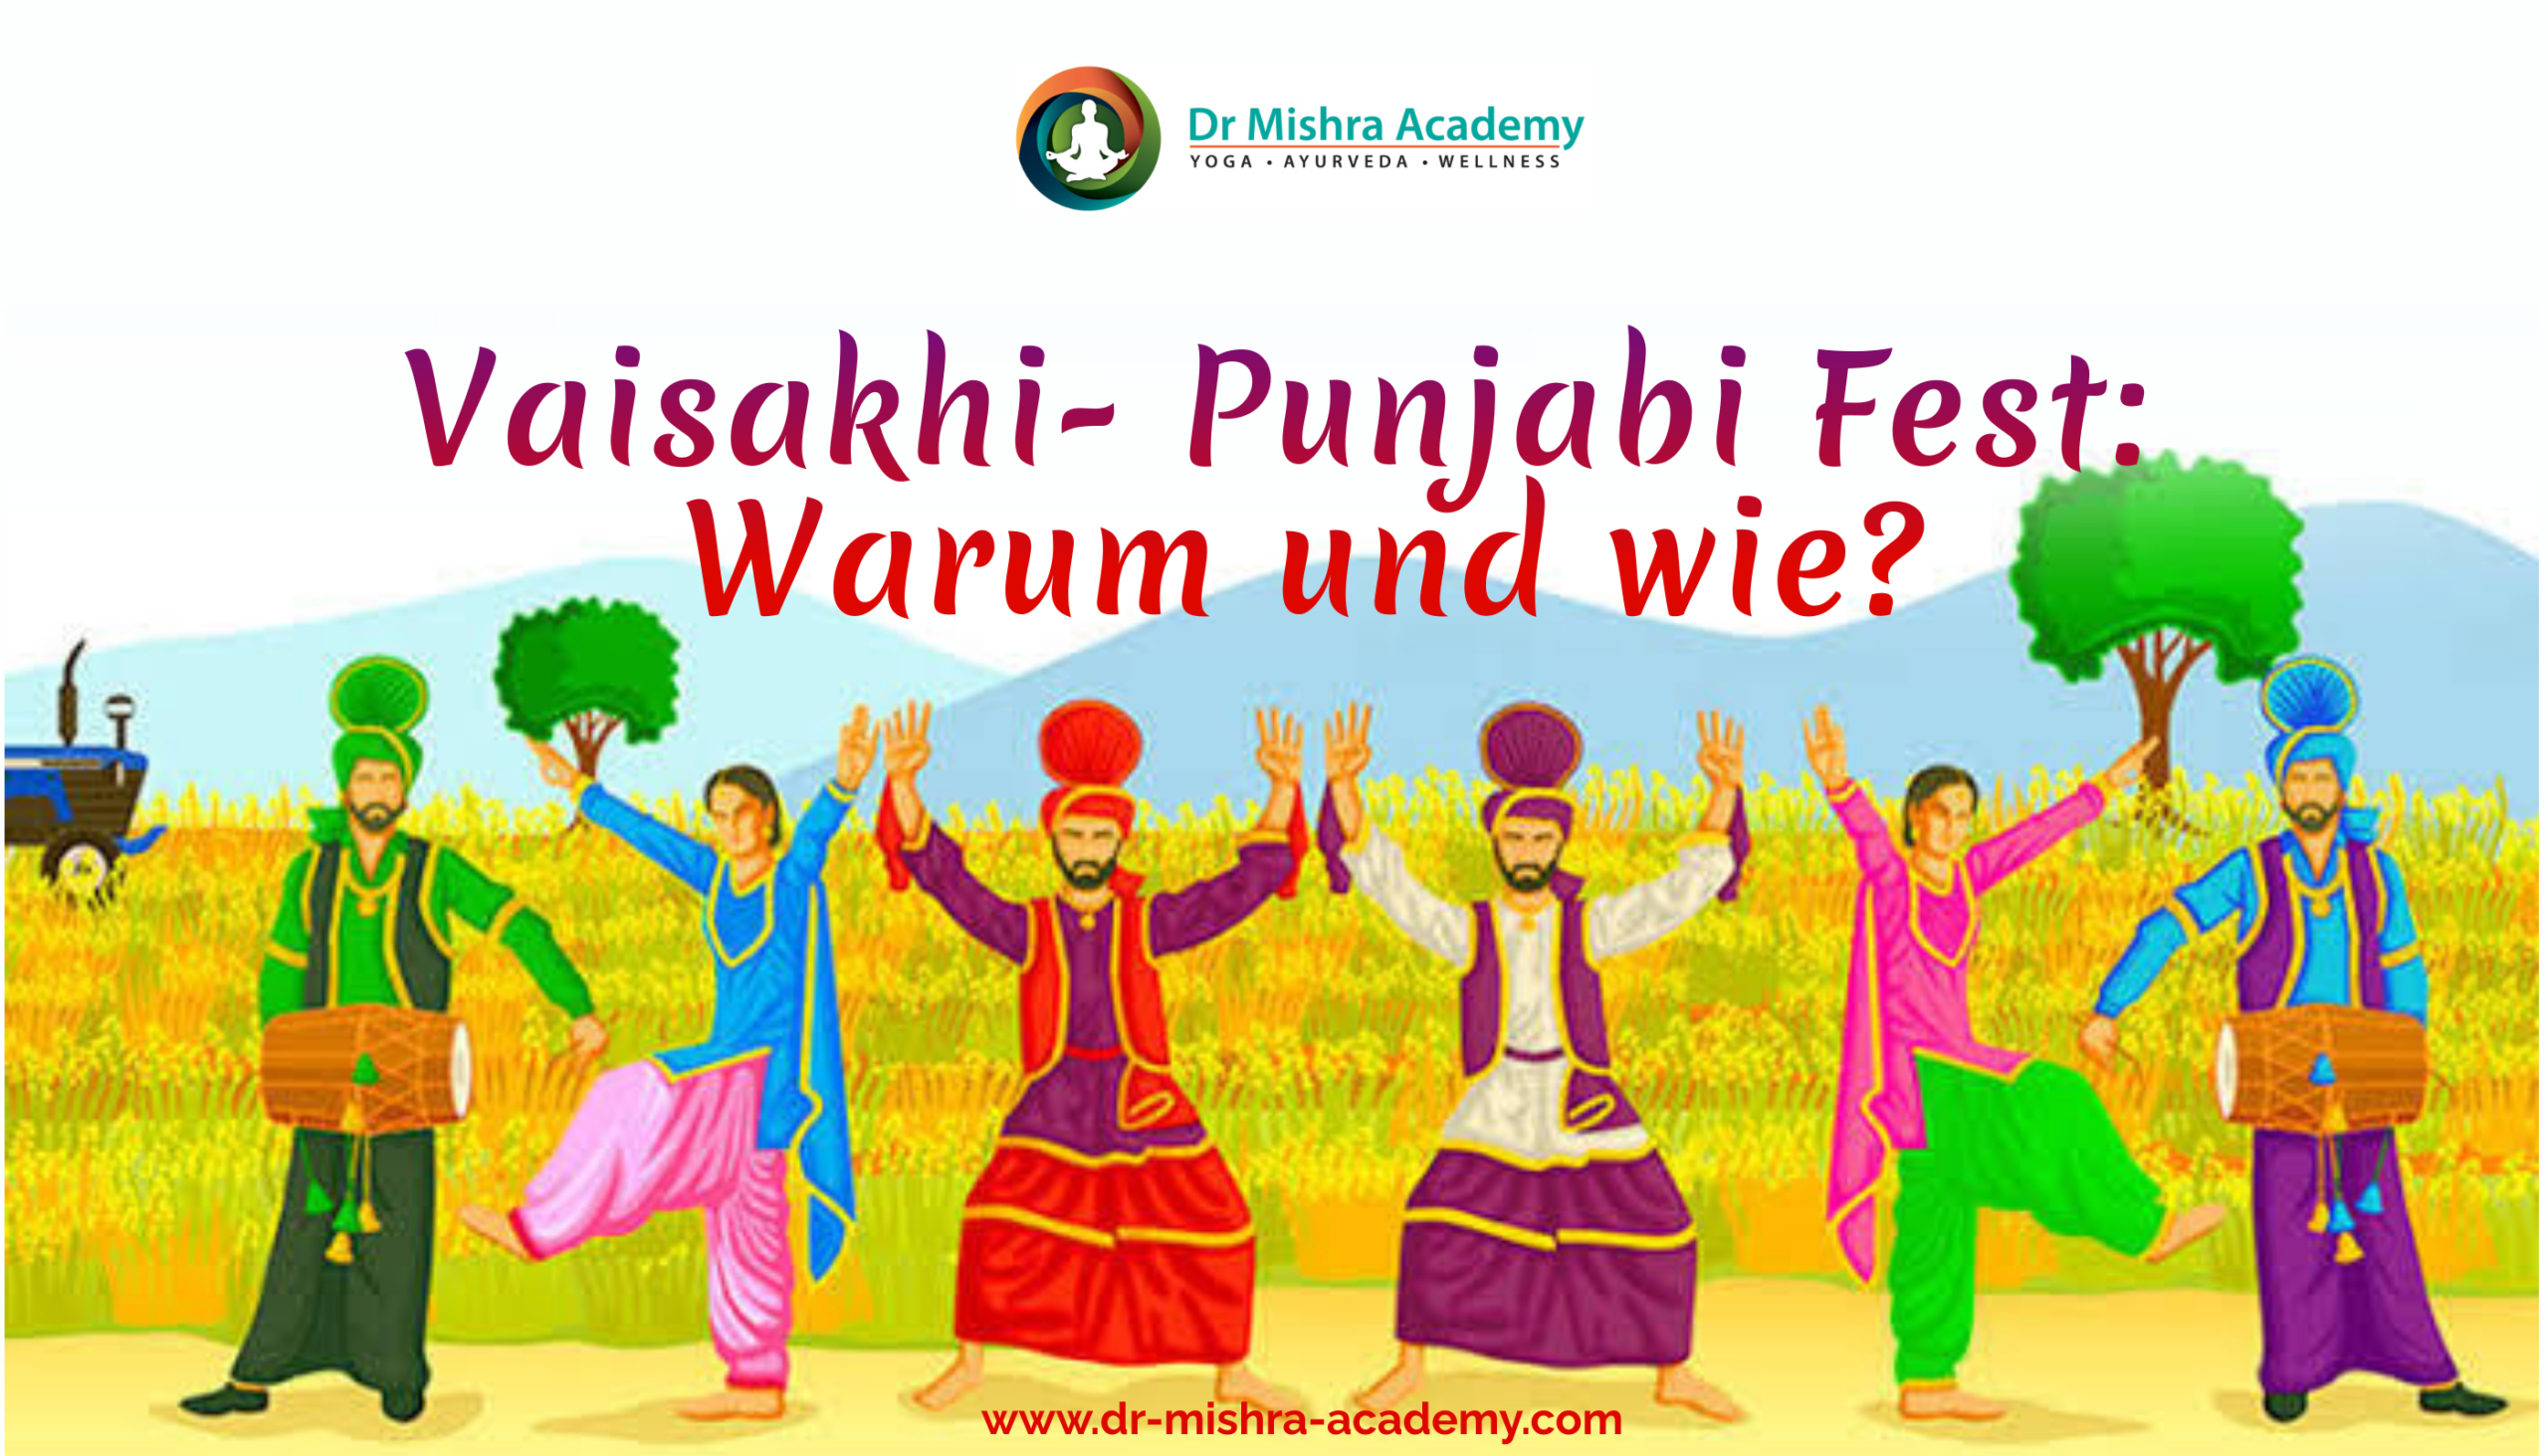 Vaisakhi- Punjabi Fest: Warum und wie? Bunter Hintergrund. Oben auf dem Flugblatt. Dr. Mishra Academy- Bremen und Hamburg Logo und in der Mitte ein tanzendes Punjabi-Nordindisches Paar. Unten die Website.